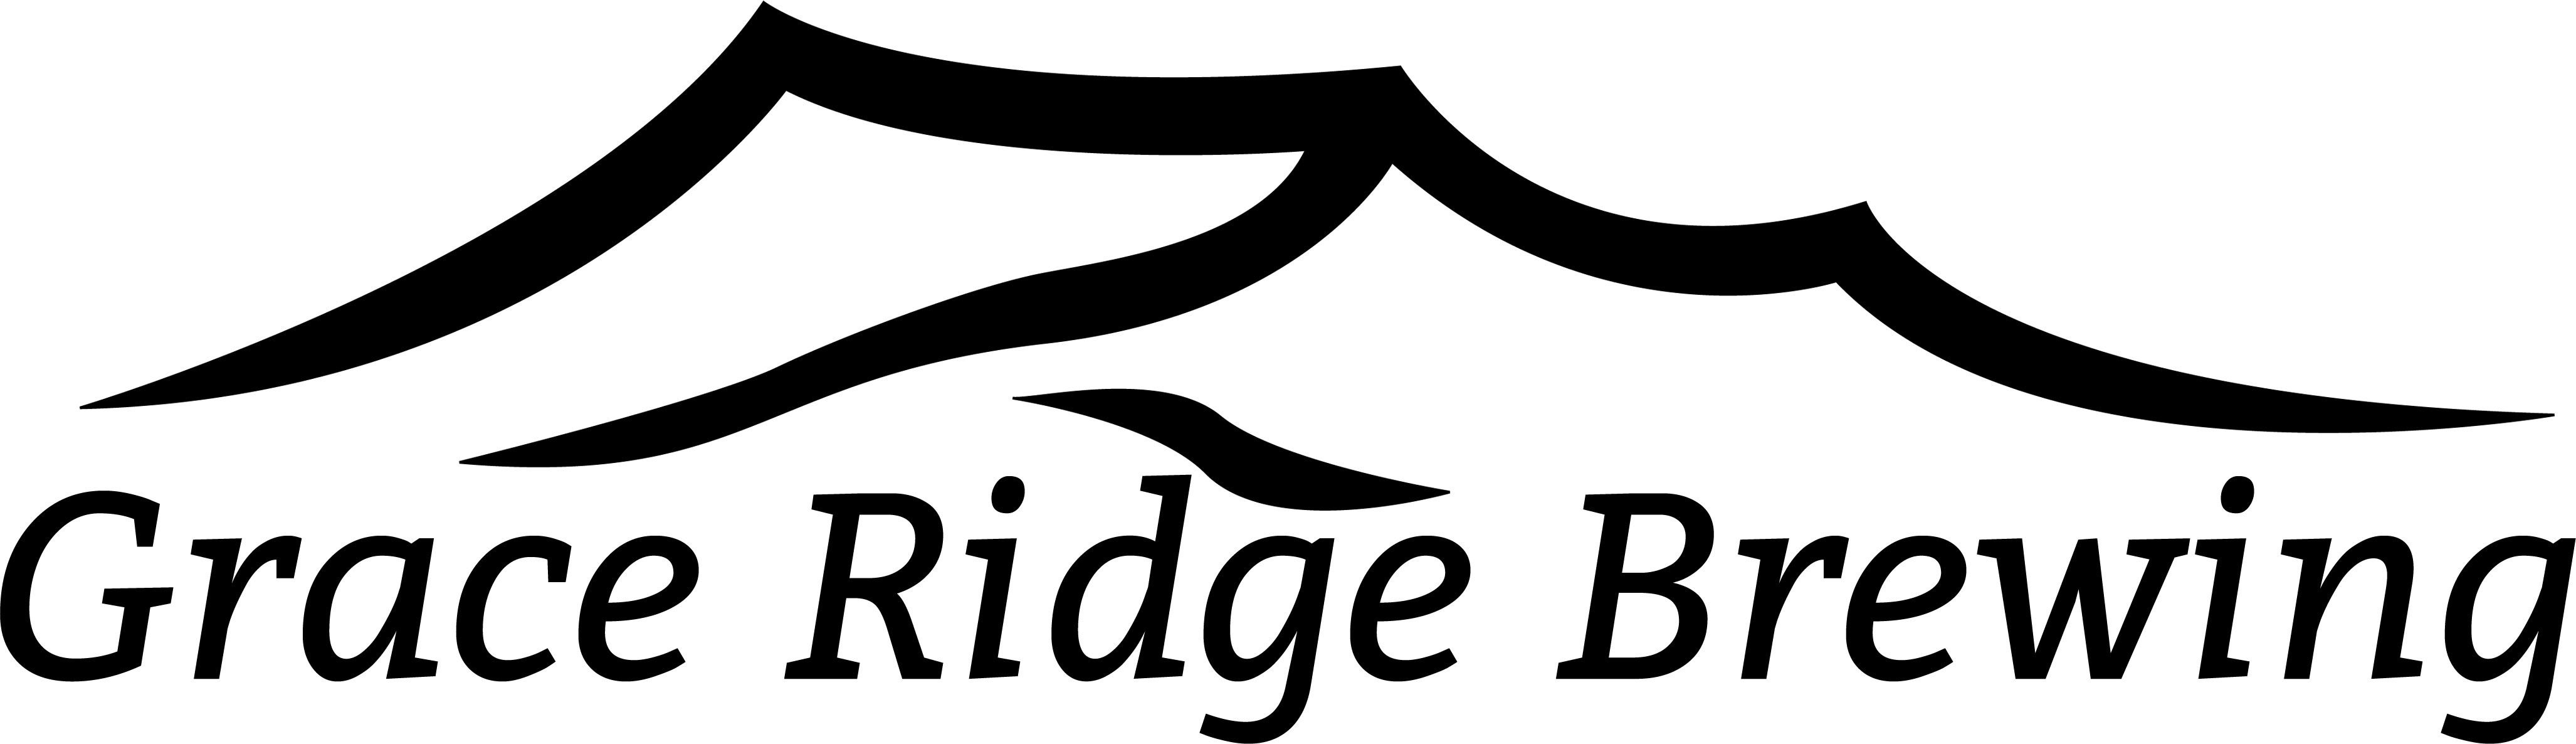 Grace-Ridge-Brewing-Banner – Kachemak Bay Shorebird Festival